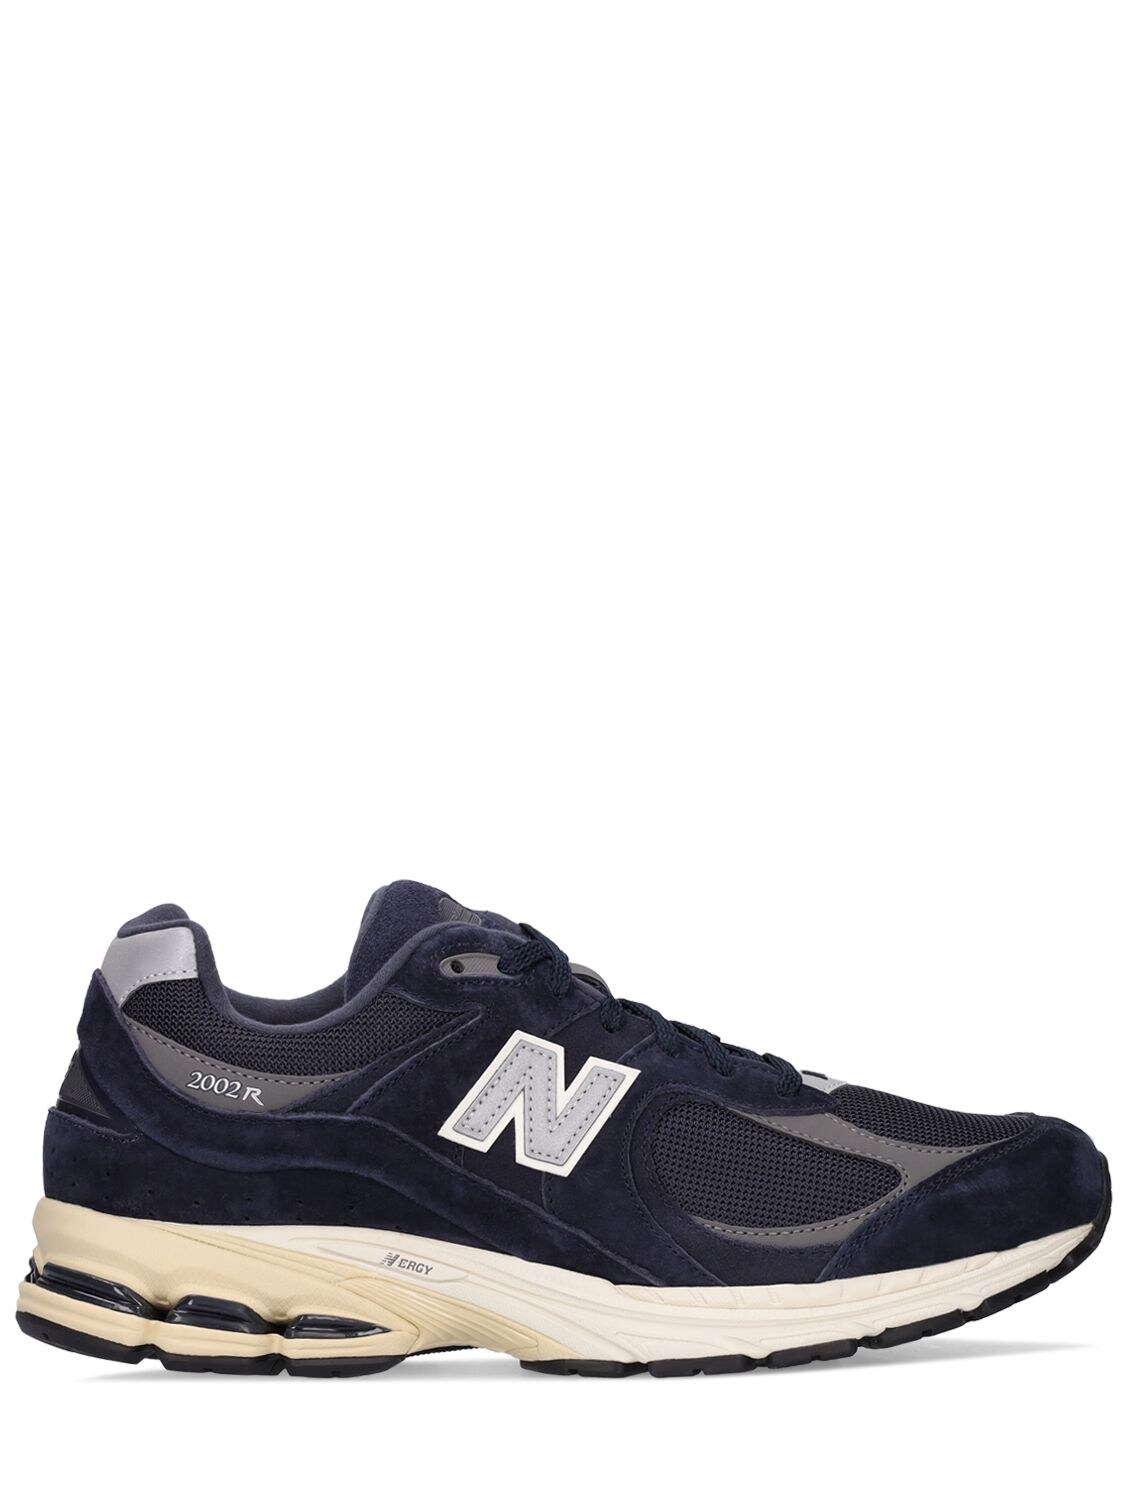 New Balance - Sneakers 2002 - Navy | Luisaviaroma